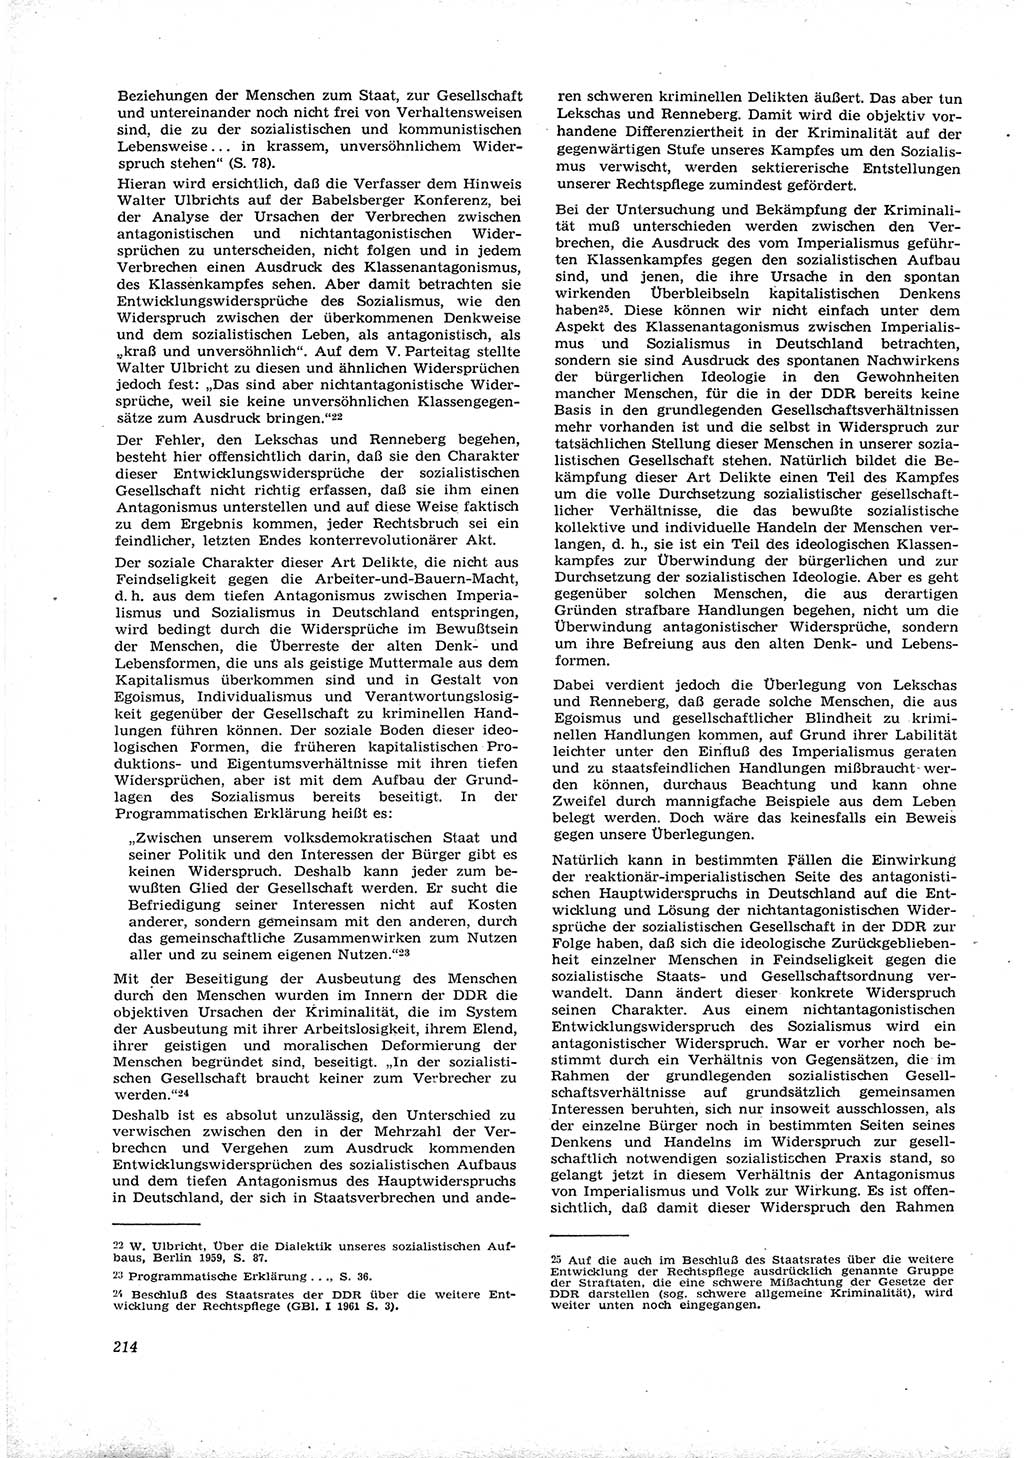 Neue Justiz (NJ), Zeitschrift für Recht und Rechtswissenschaft [Deutsche Demokratische Republik (DDR)], 16. Jahrgang 1962, Seite 214 (NJ DDR 1962, S. 214)